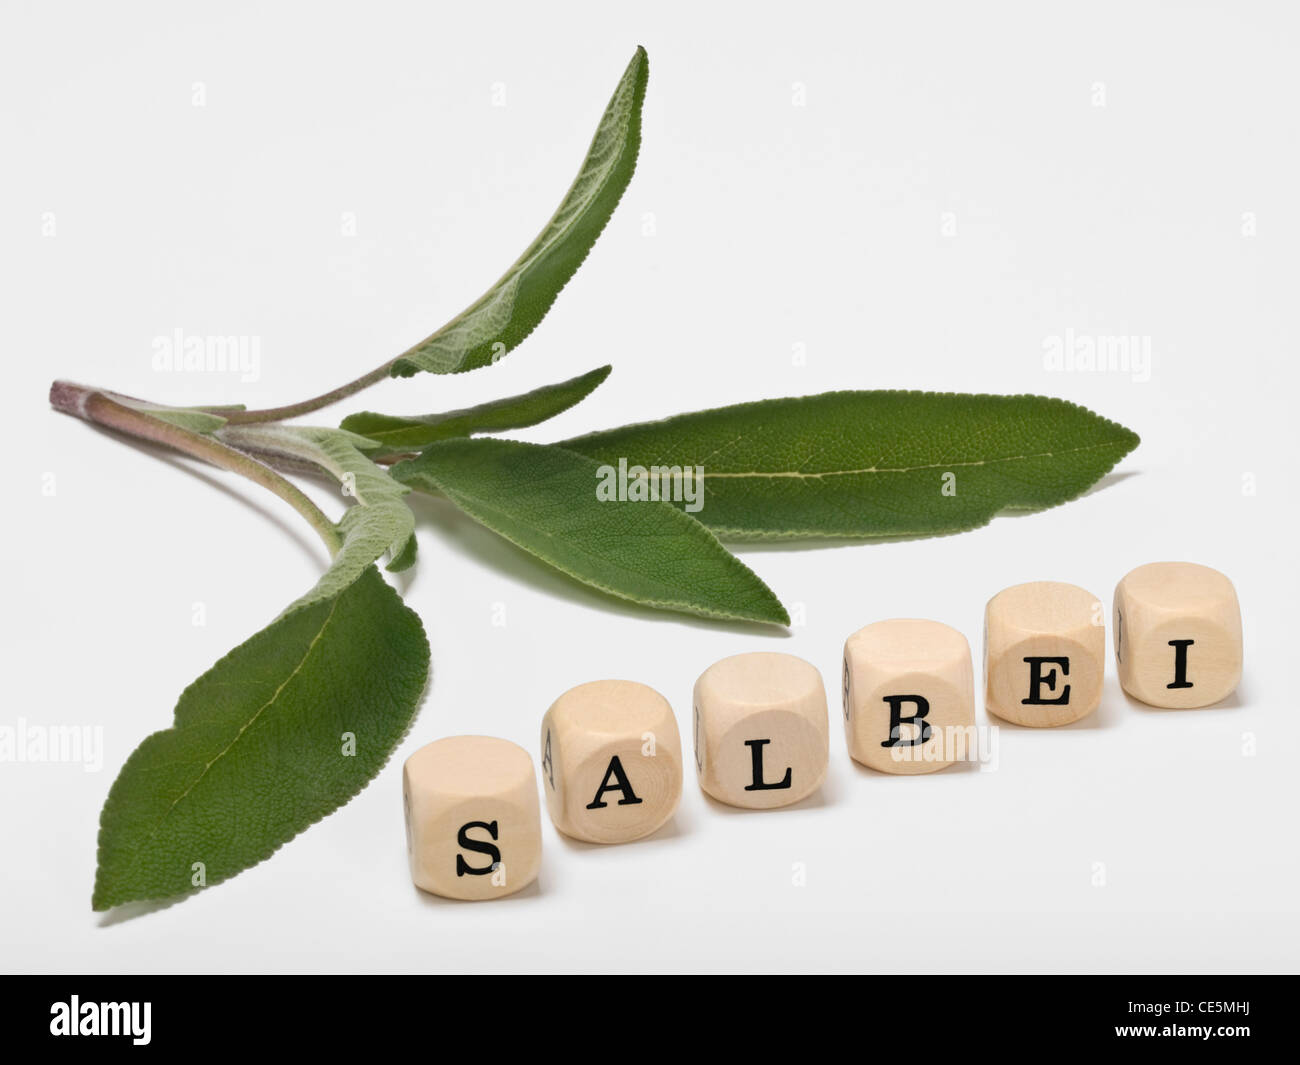 Detail-Foto von Salvia Blätter neben sind Würfel bilden das Wort "Salvia" in deutscher Sprache Stockfoto